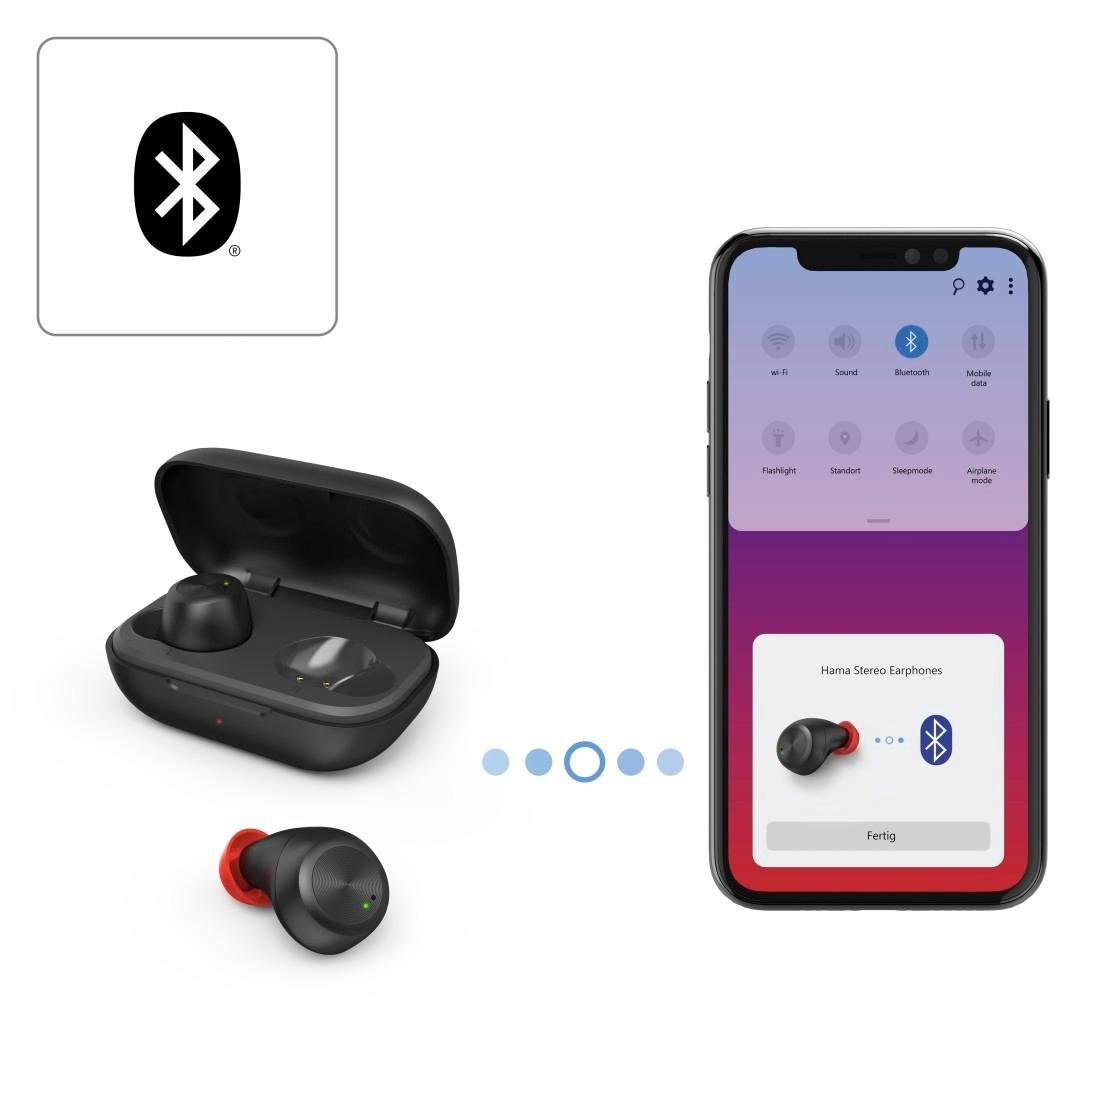 und Google Bluetooth, Sprachsteuerung AVRCP Assistant, mit Wireless, Anrufe Google HFP, ultraleicht, Sprachsteuerung, Bluetooth, für Alltag, Ladebox) A2DP schwarz Steuerung Siri, kompatibel True Sport IPX (Freisprechfunktion, und für Musik, Bluetooth-Kopfhörer Wireless 4 True Siri, Now, integrierte Bluetooth-Kopfhörer Hama Spritzwasserschutz, In-Ear